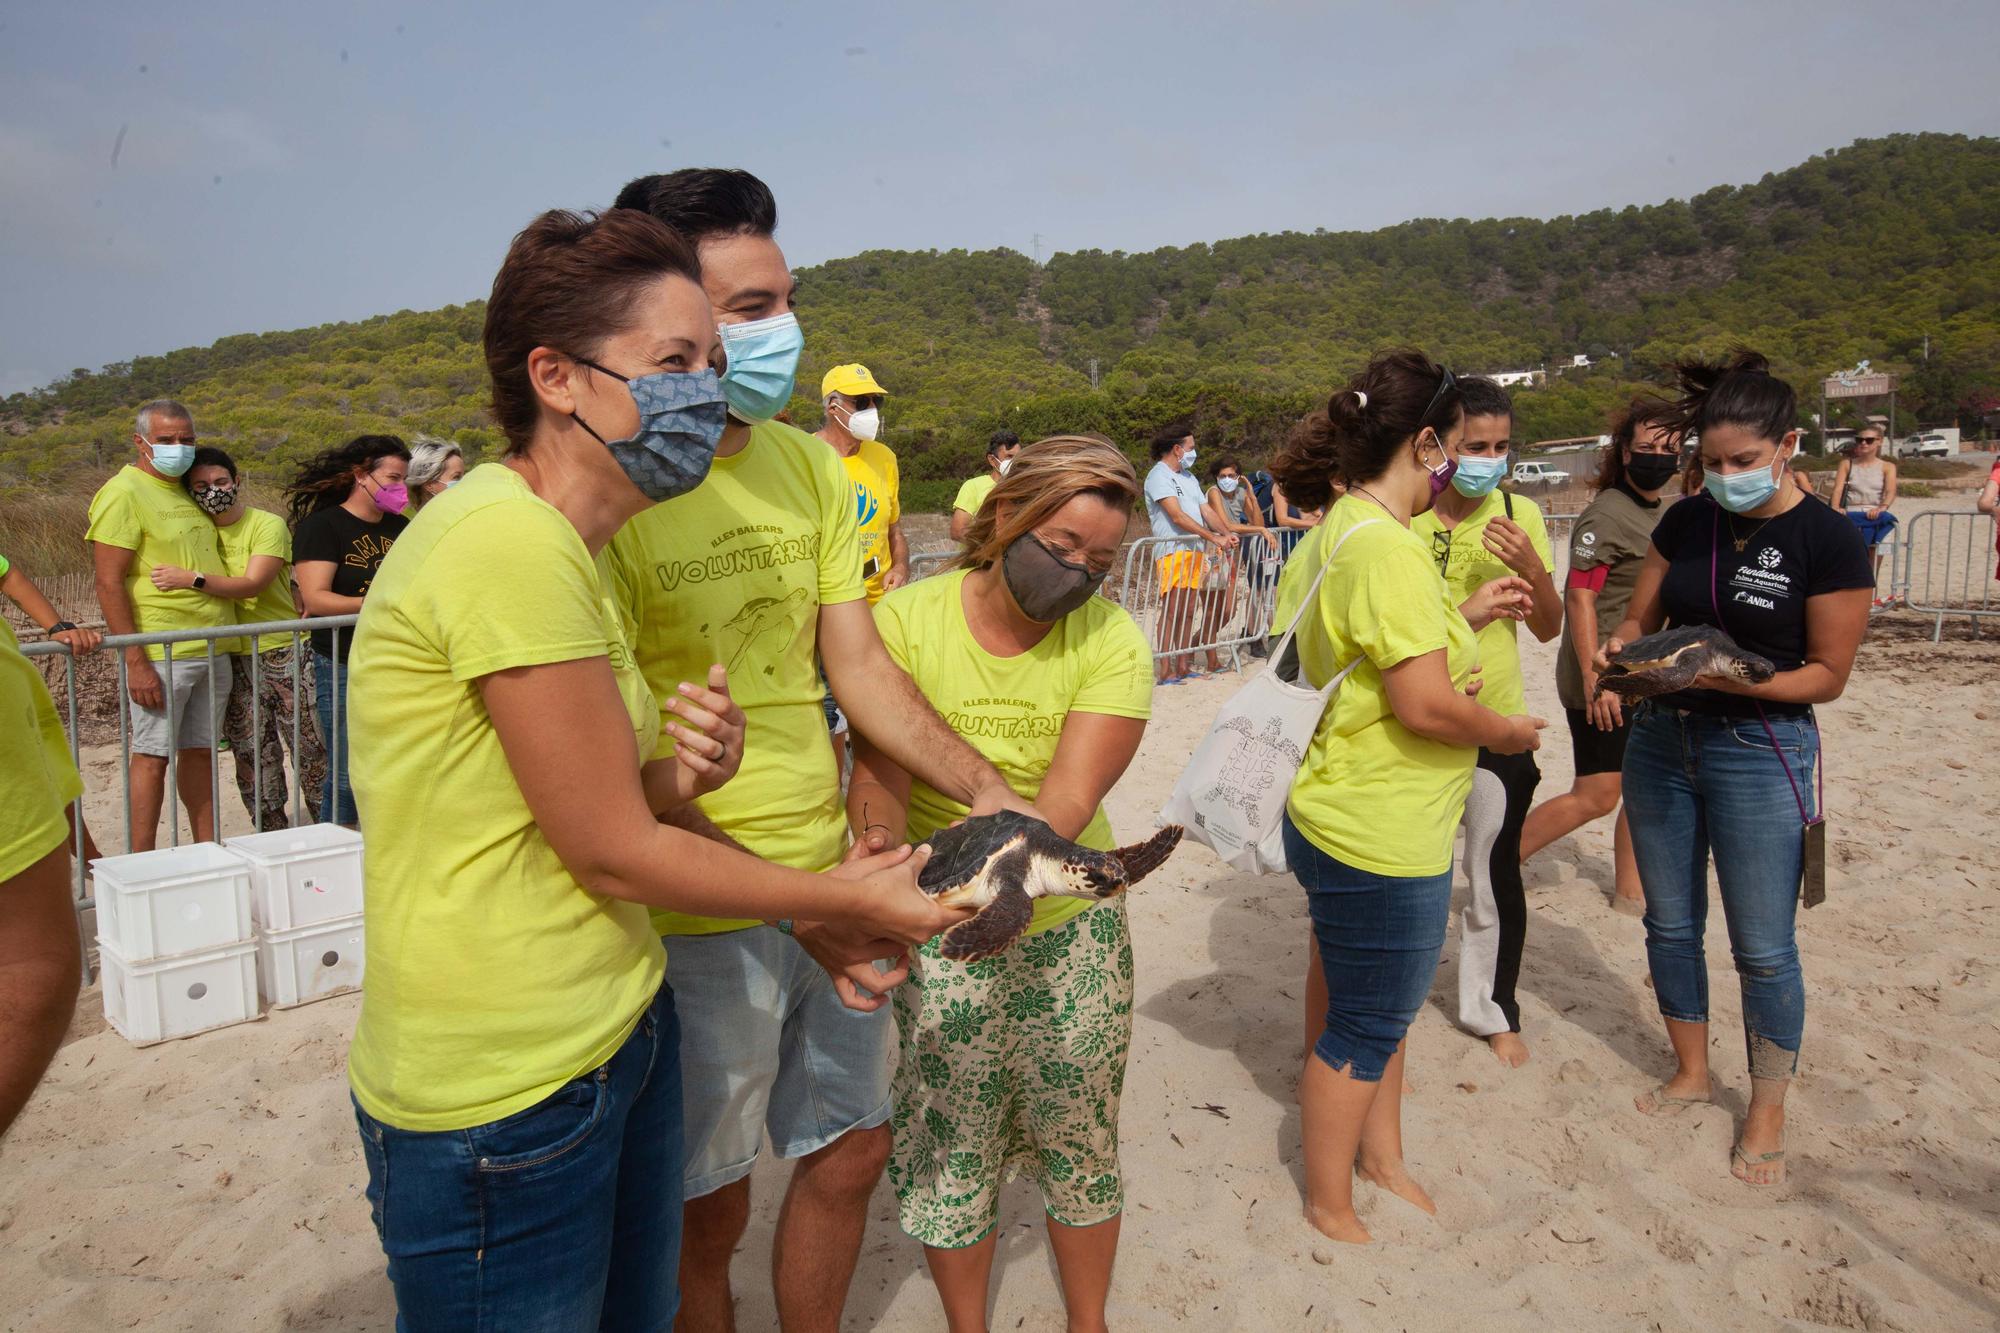 Ponen en libertad a las primeras tortugas nacidas en una playa de Ibiza